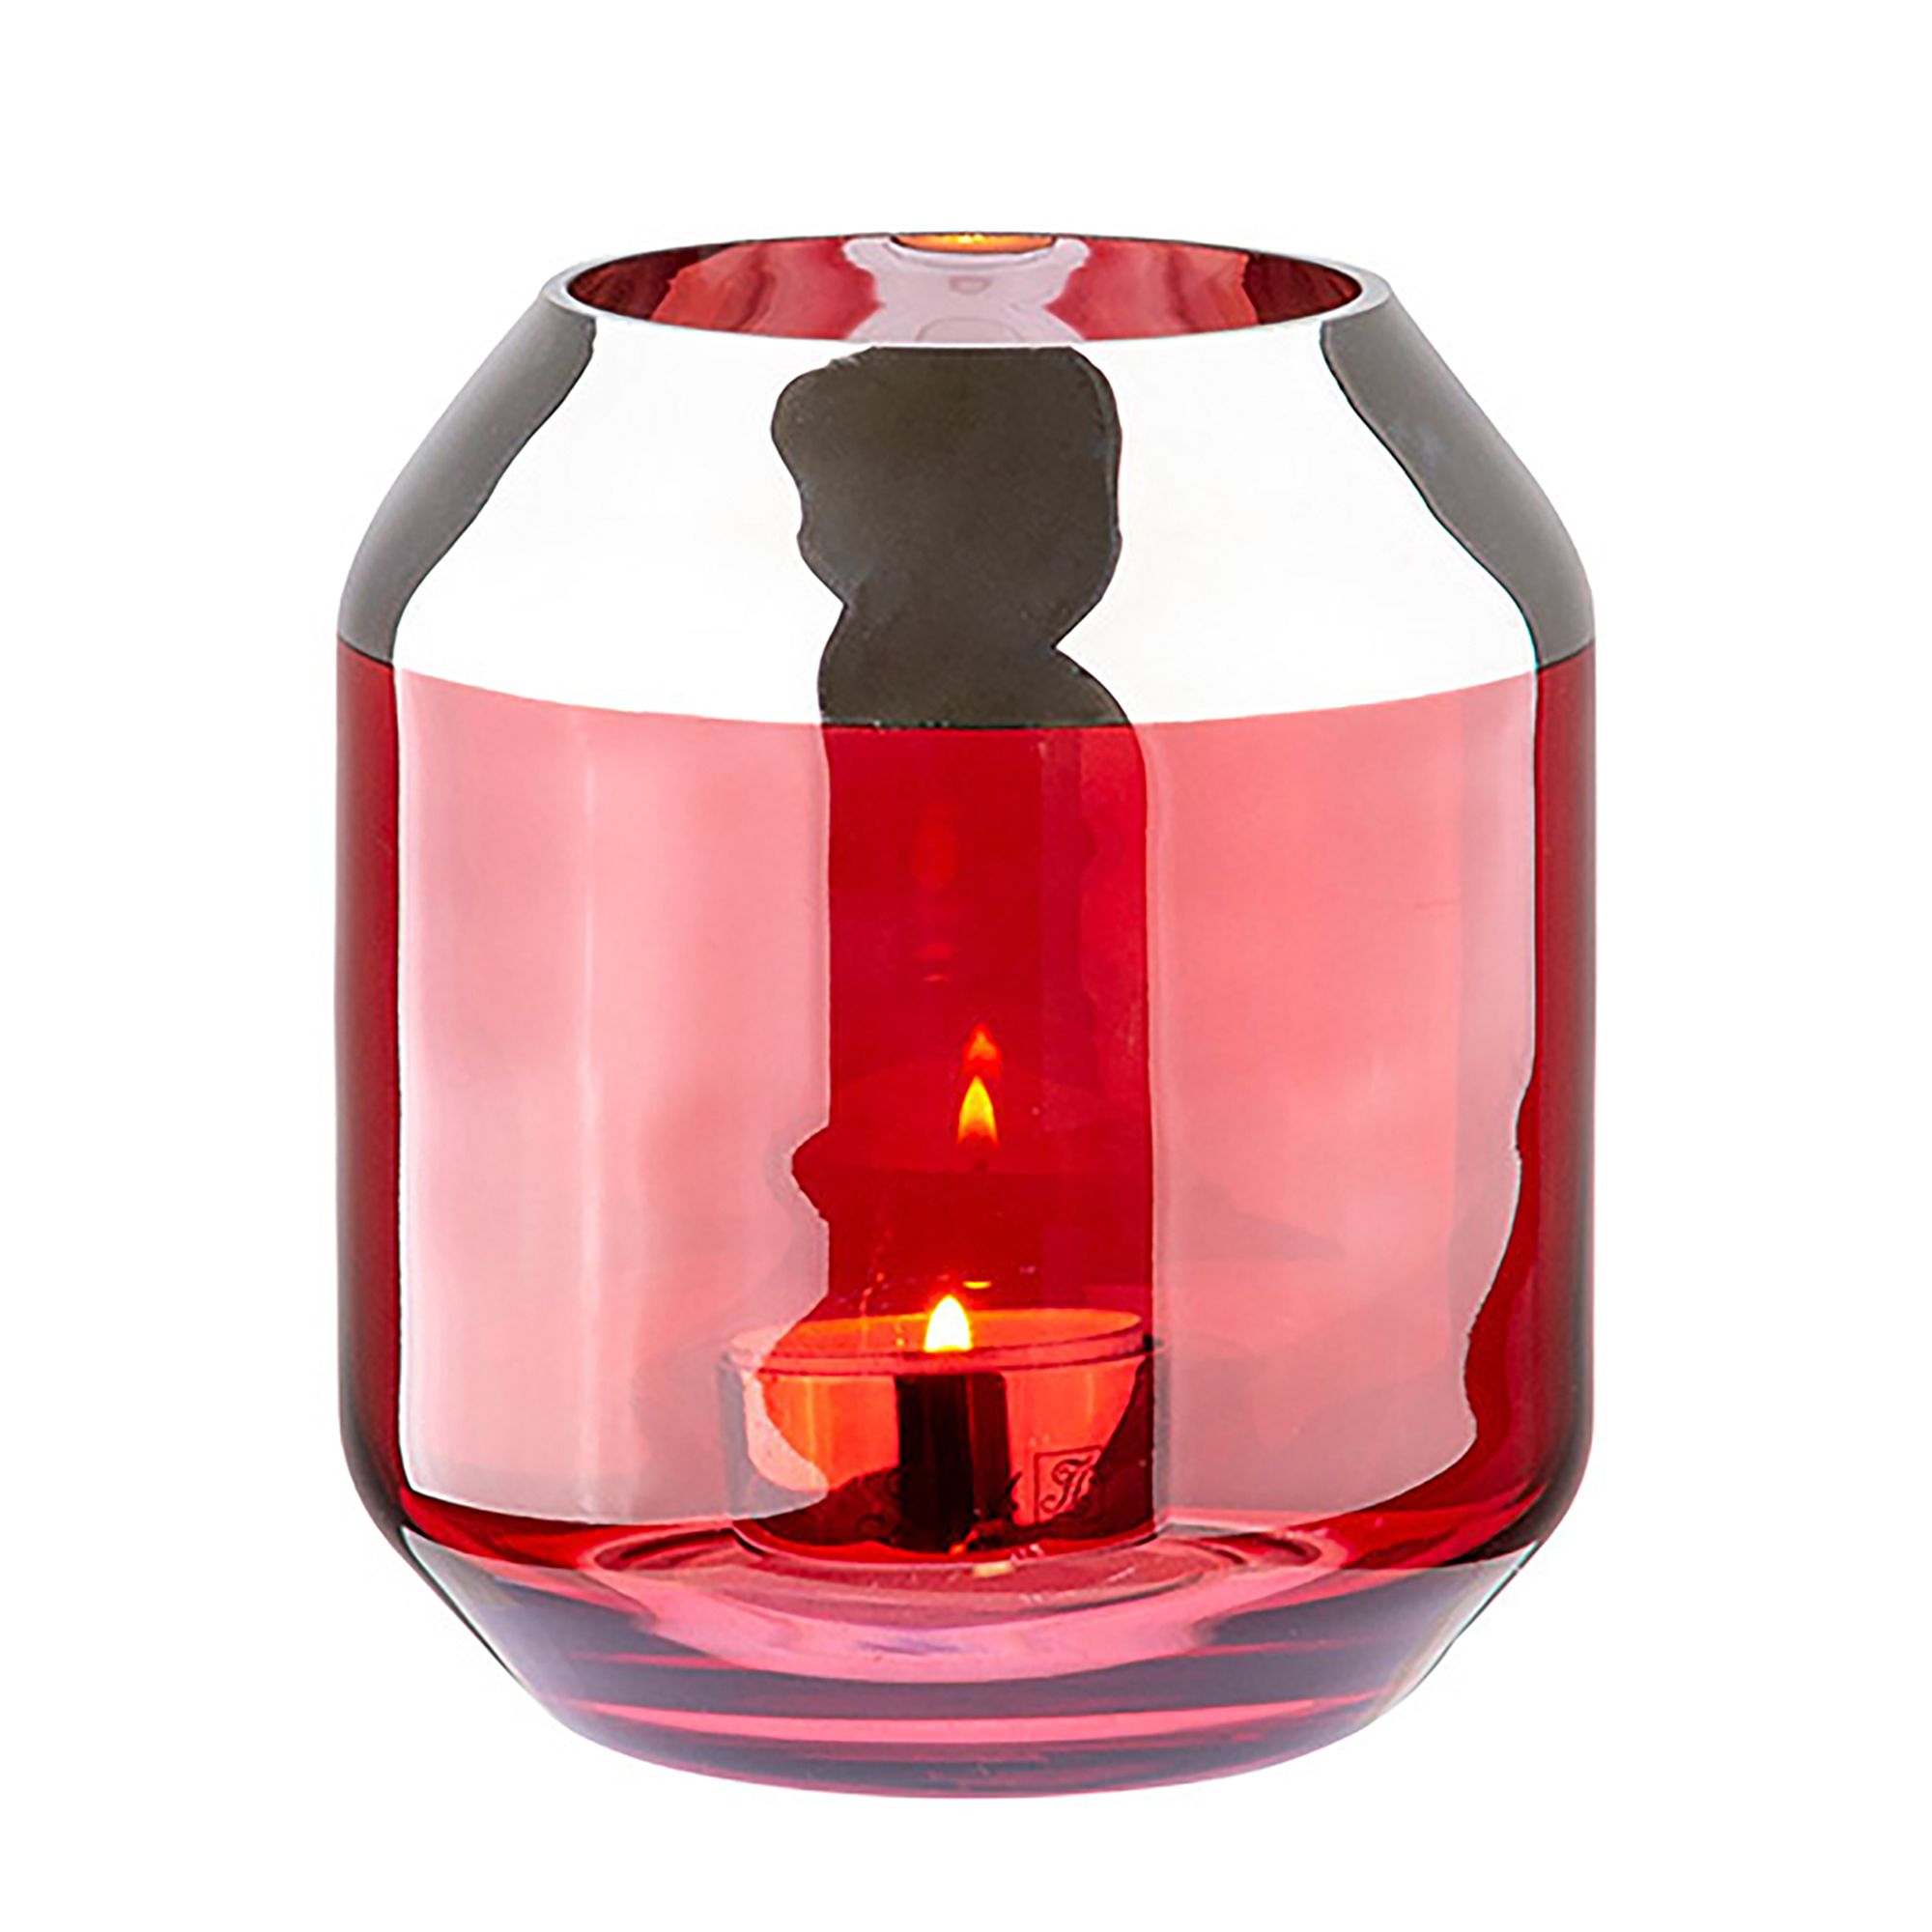 FINK Teelichthalter SMILLA 12cm Höhe rot Ø 14cm, Glas